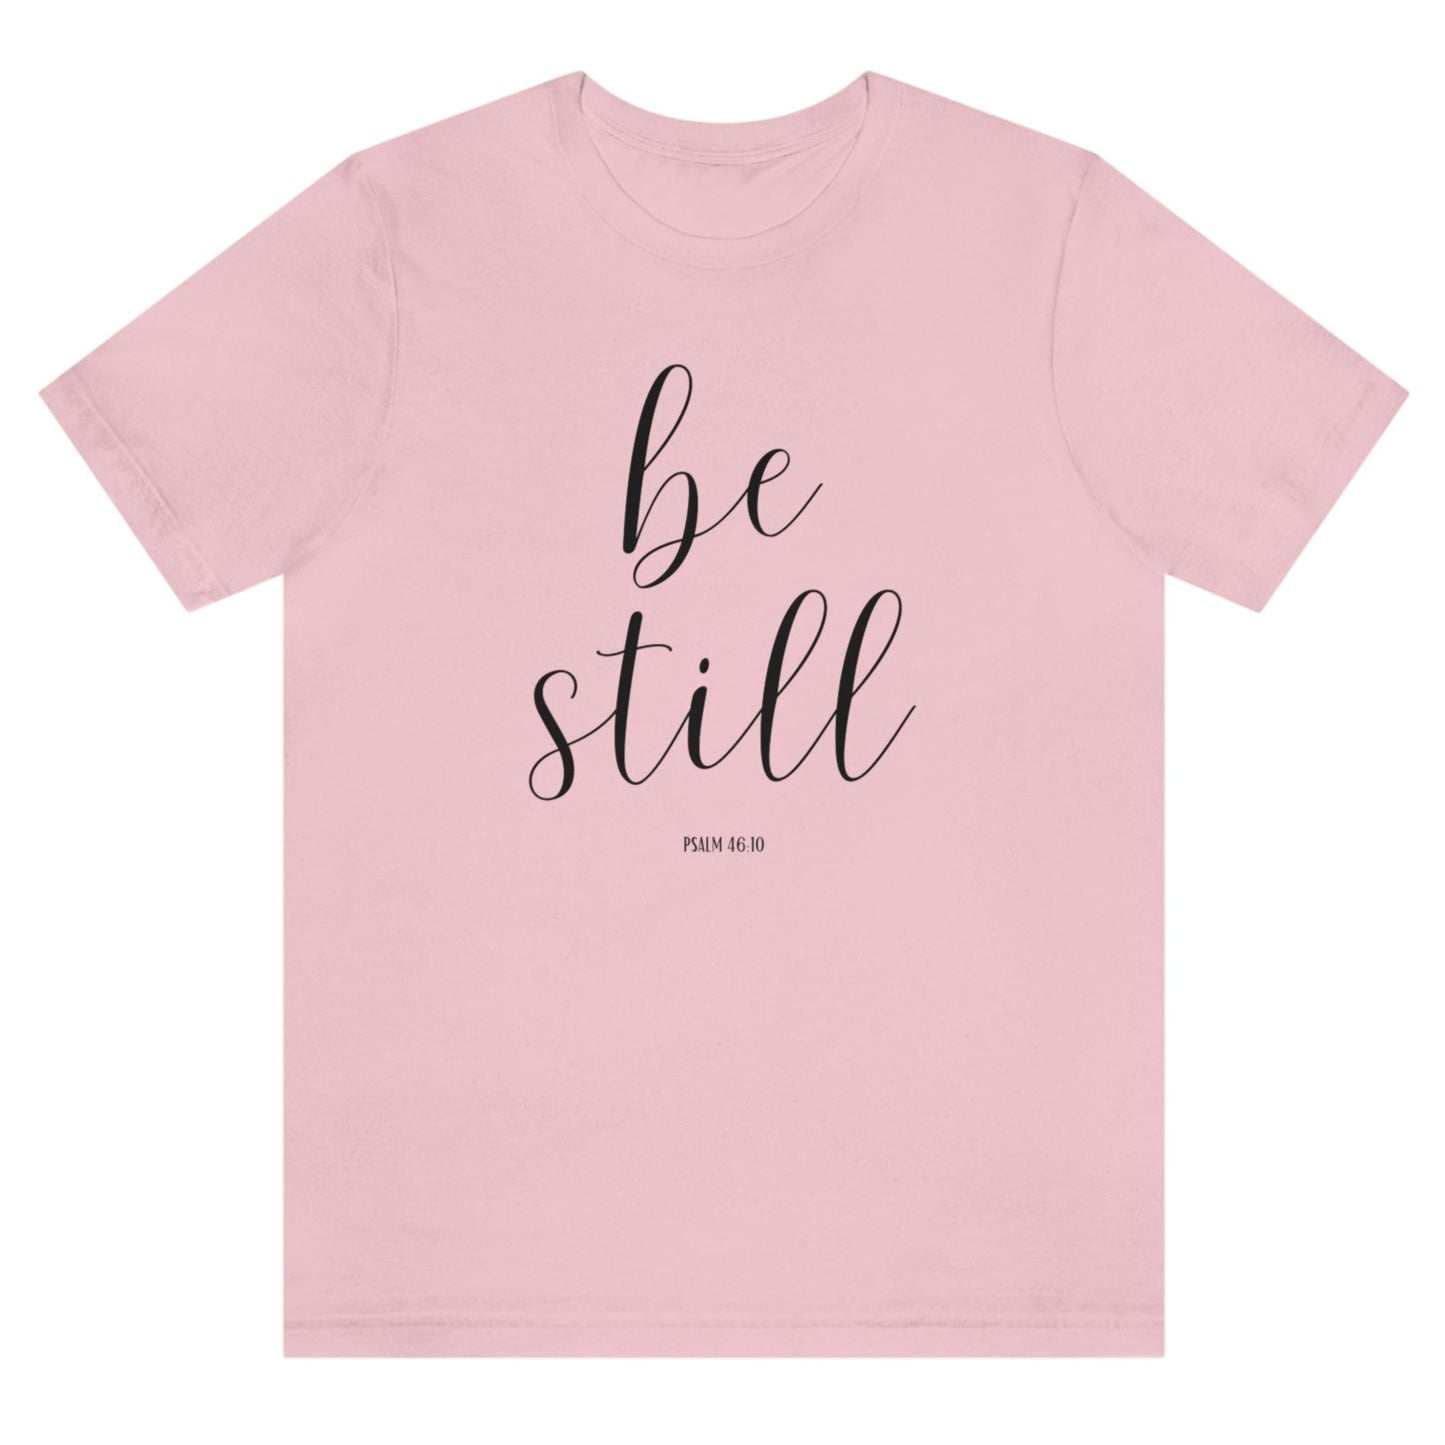 be-still-psalm-46-10-pink-t-shirt-womens-christian-inspiring